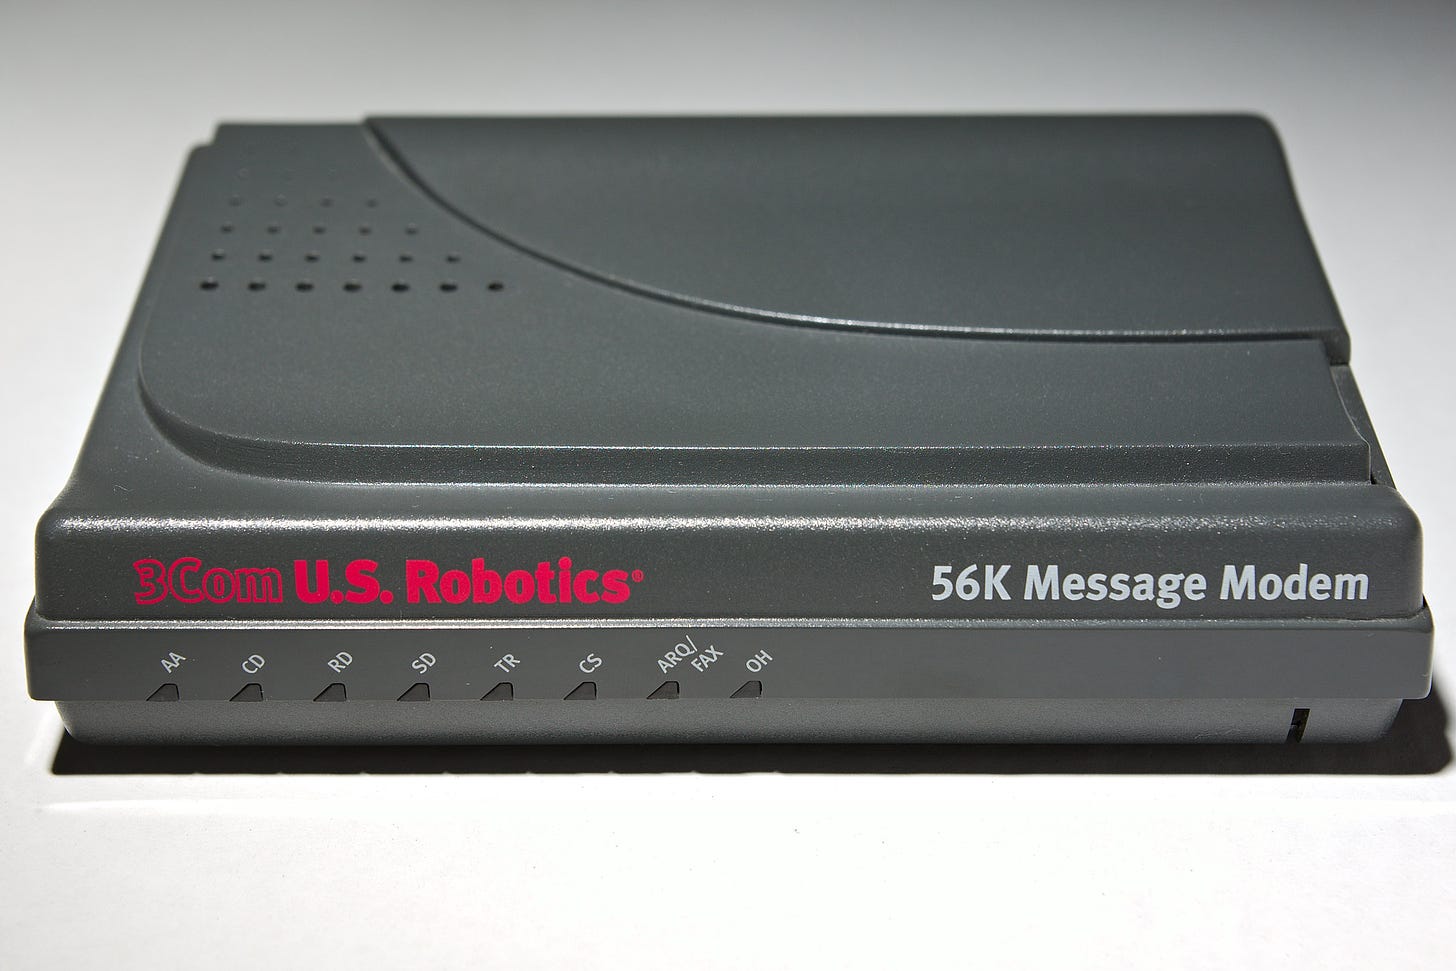  3Com US Robotics 56K Message Modem 